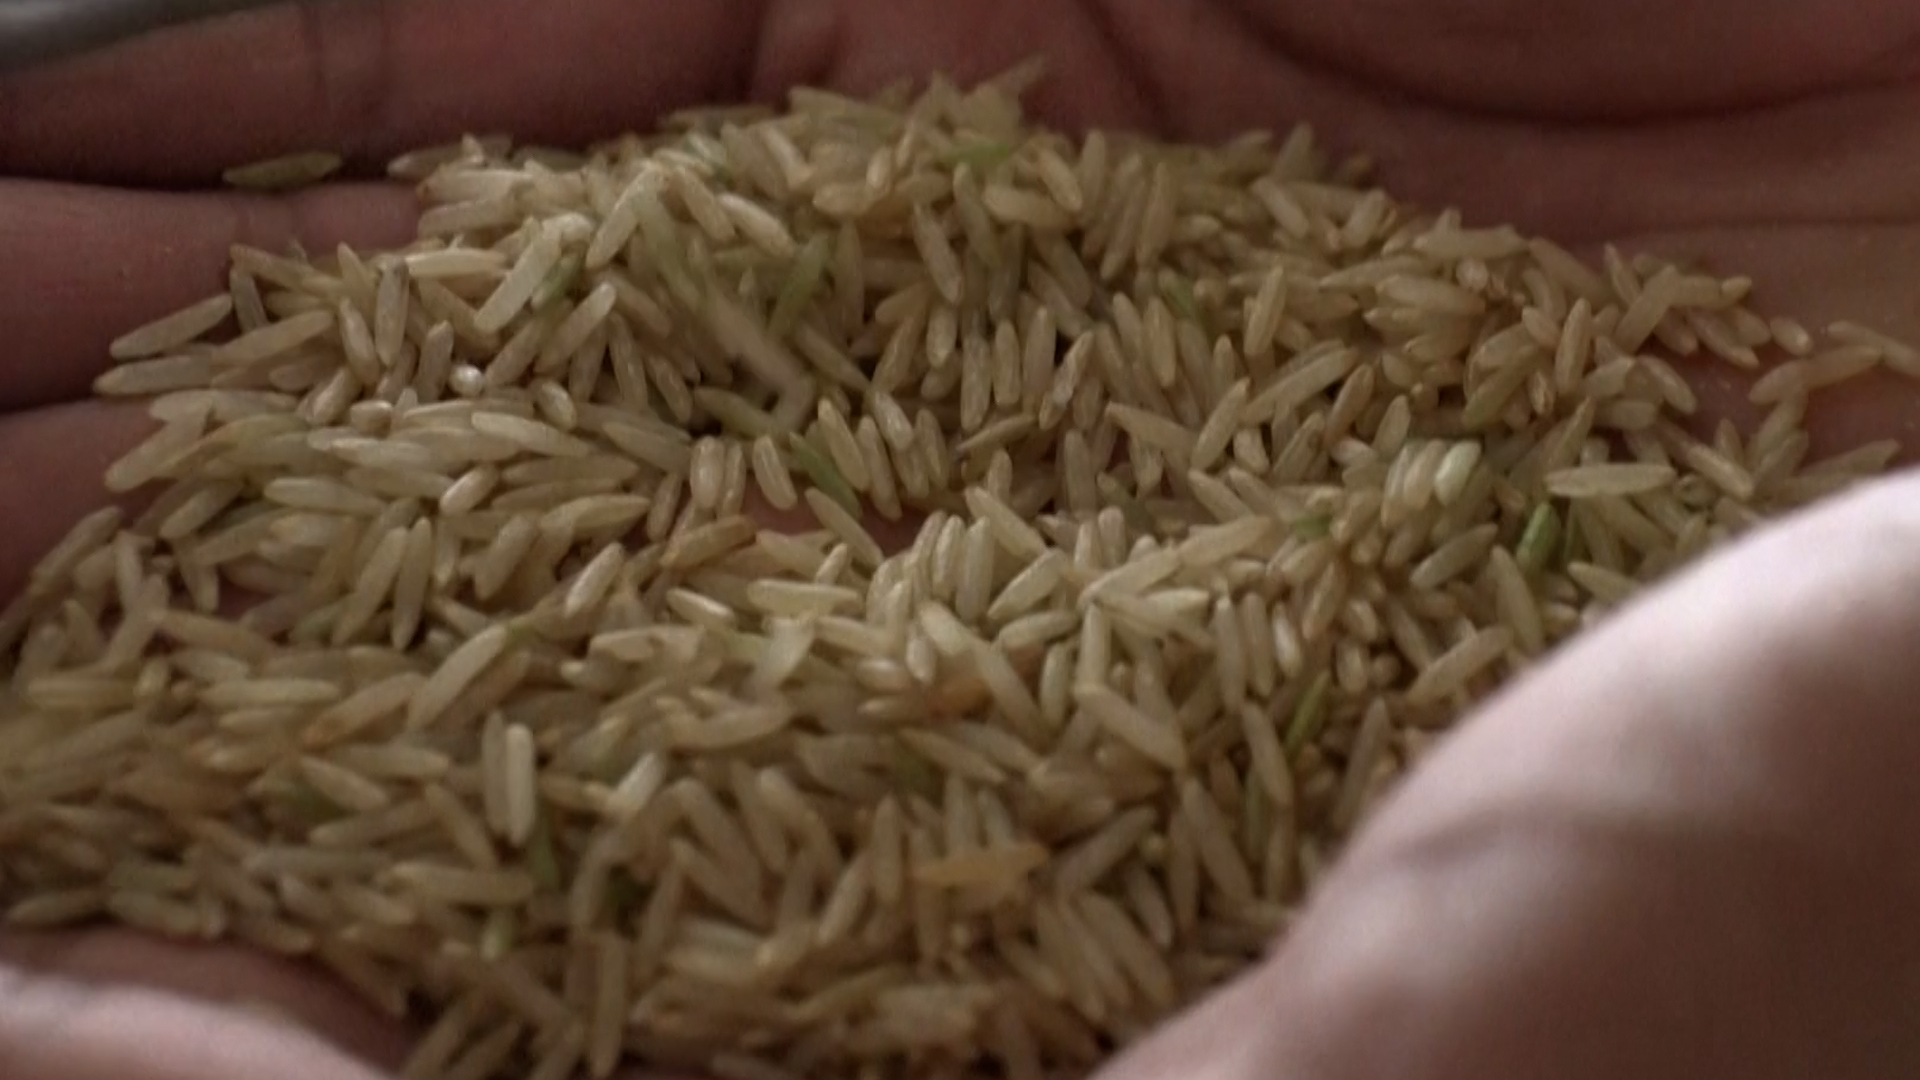 La présence d’aflatoxines a été détectée dans un riz basmati vendu chez Lidl. Selon l’Autorité européenne de sécurité des aliments (EFSA), ces toxines sont « génotoxiques et cancérigènes » pour l’Homme.